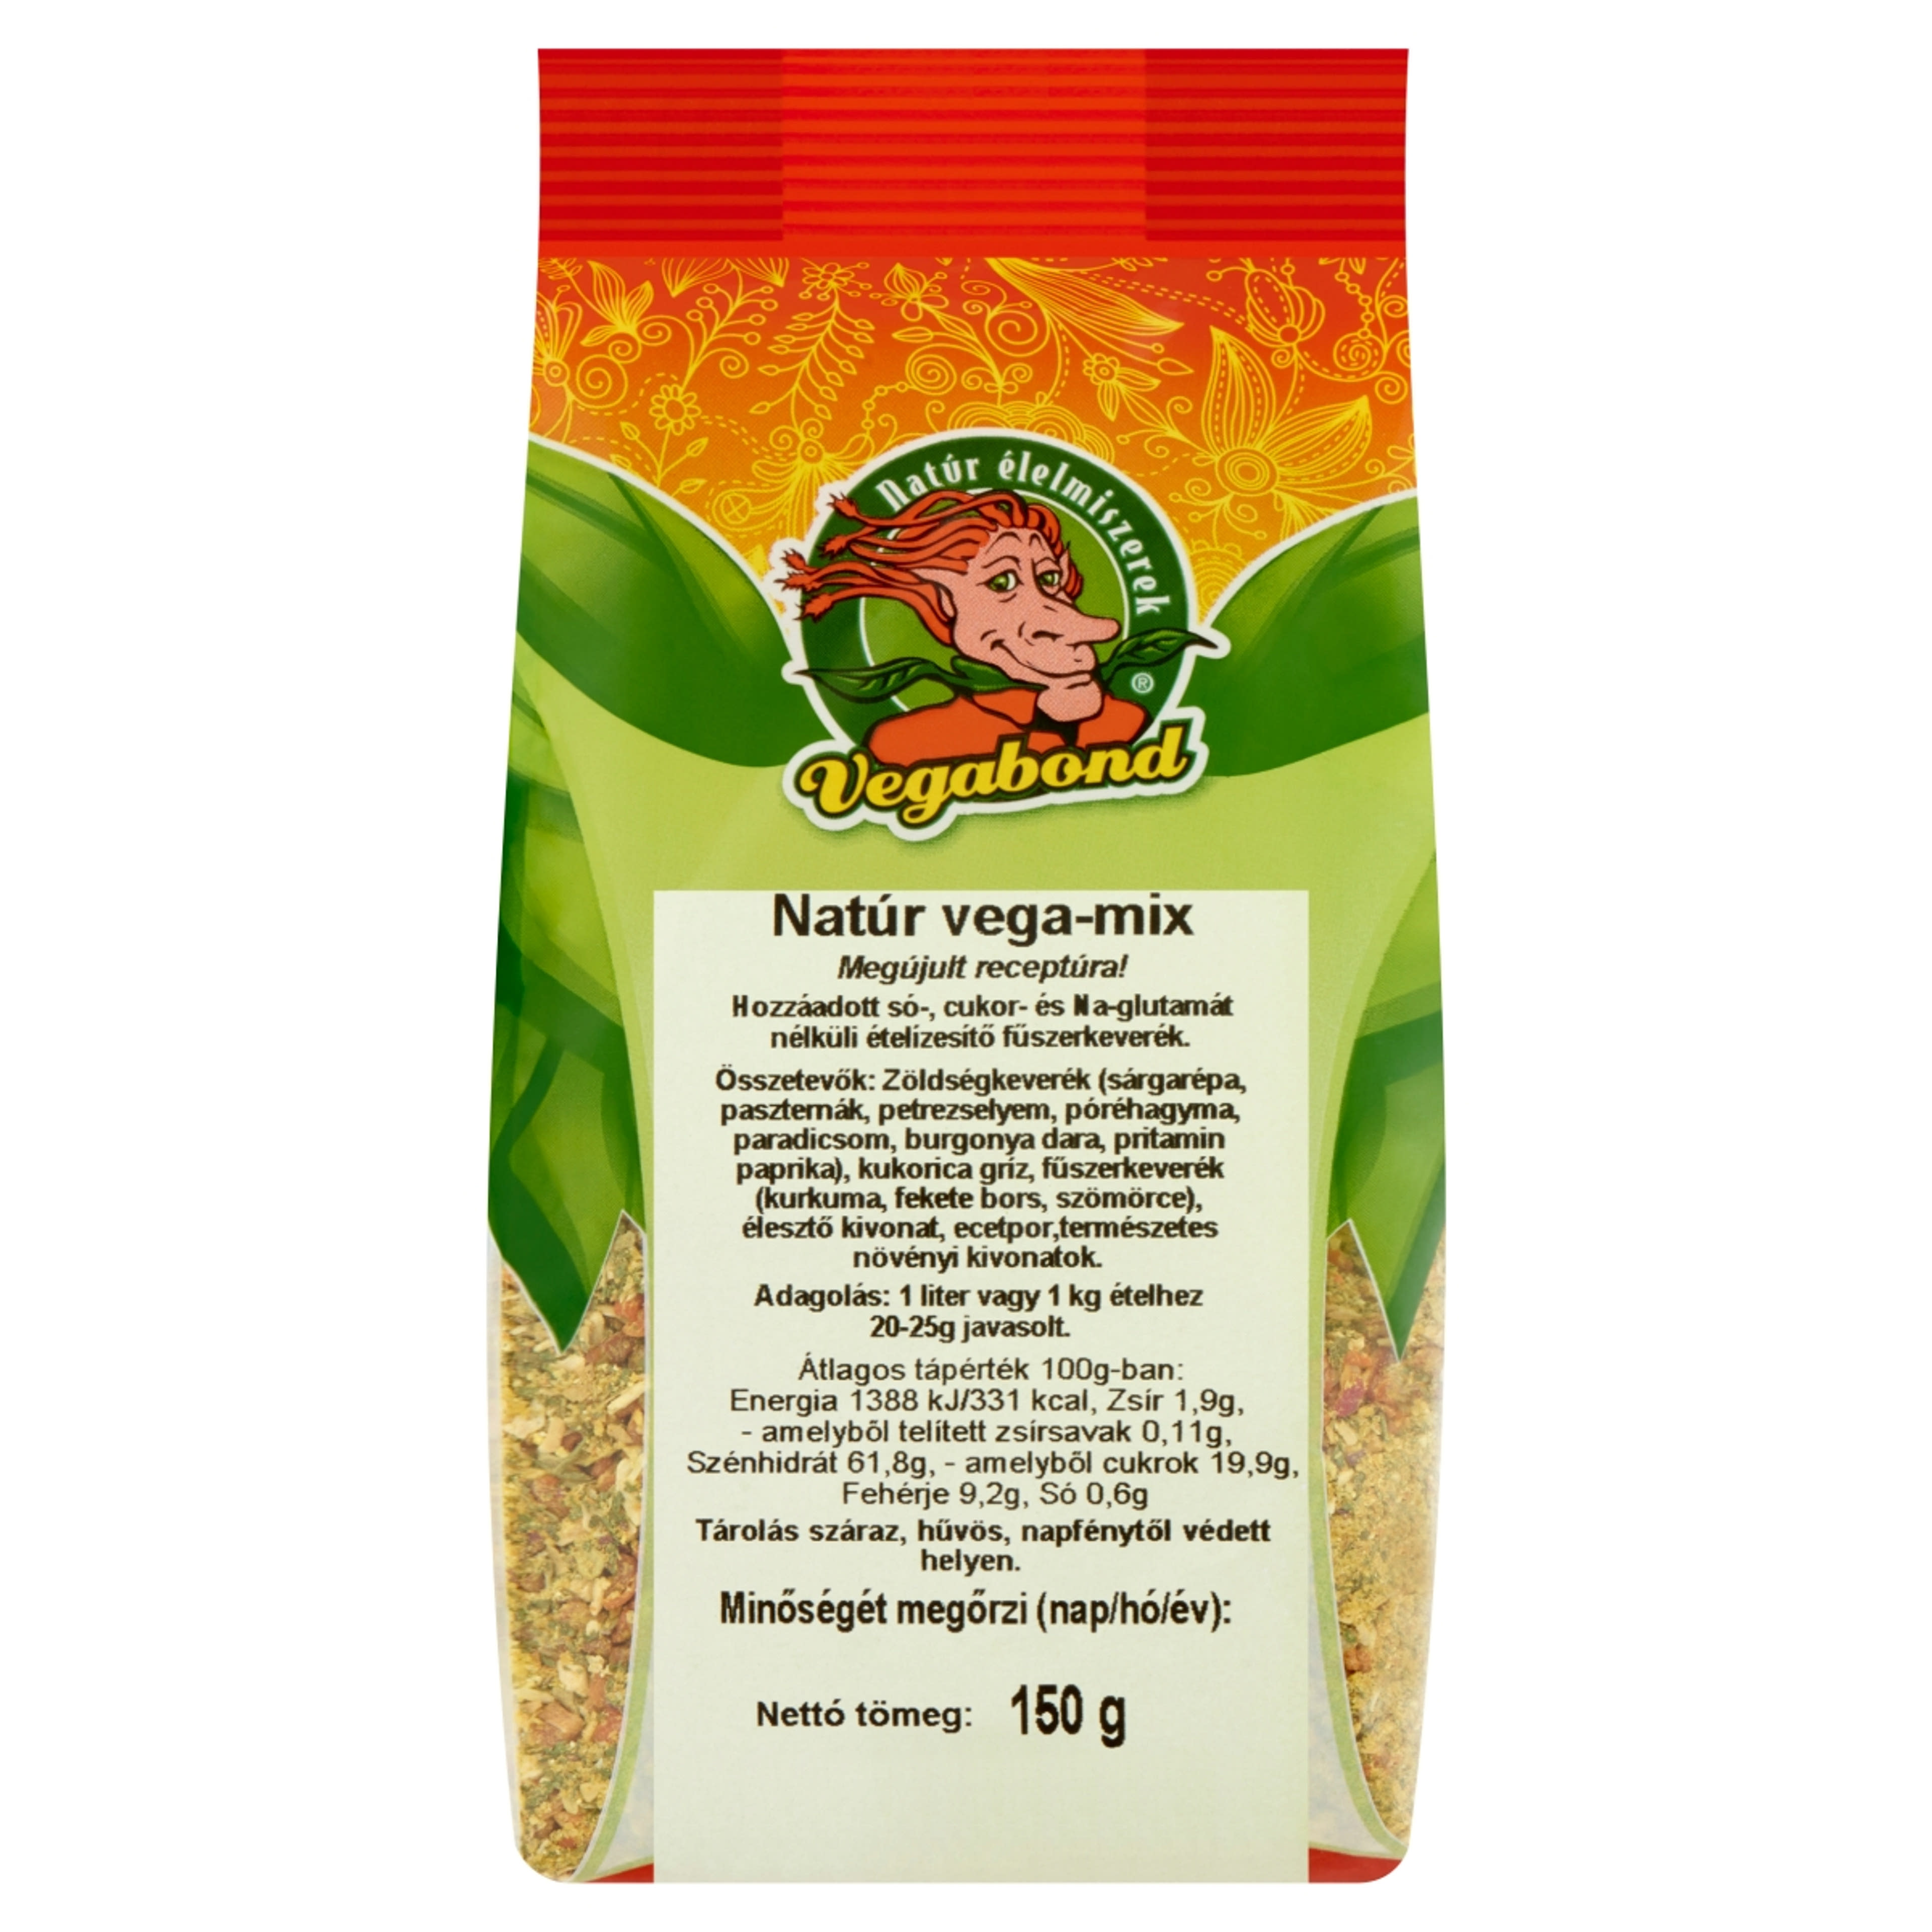 Vegabond natur vega mix ételízesítő - 150 g